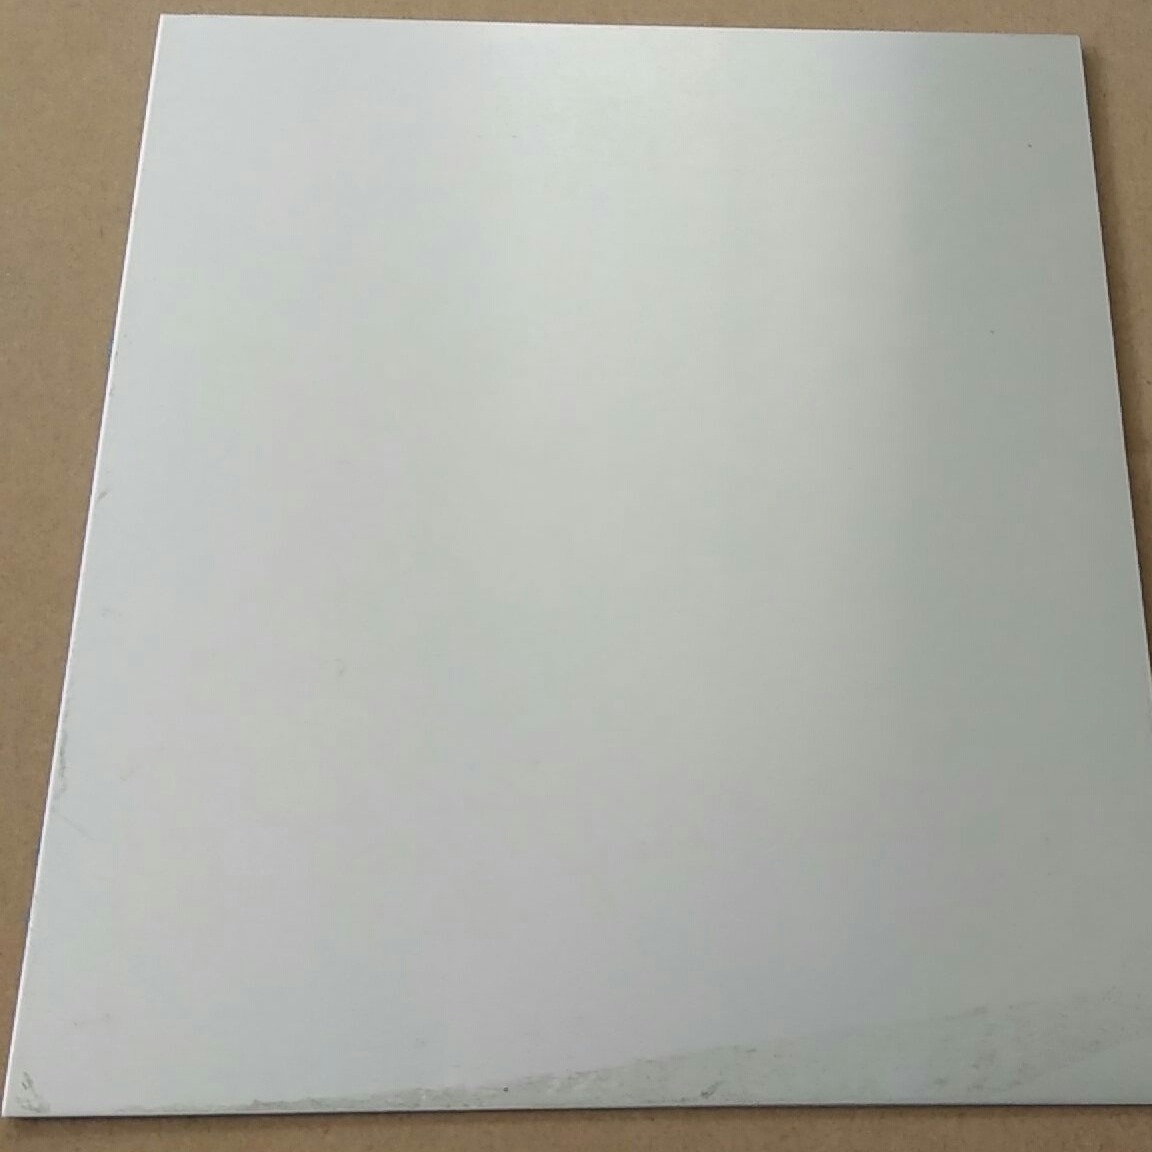 鲁剑 高强度合金铝板 铝皮铝卷铝板 硬质铝合金板 适用广泛可定制